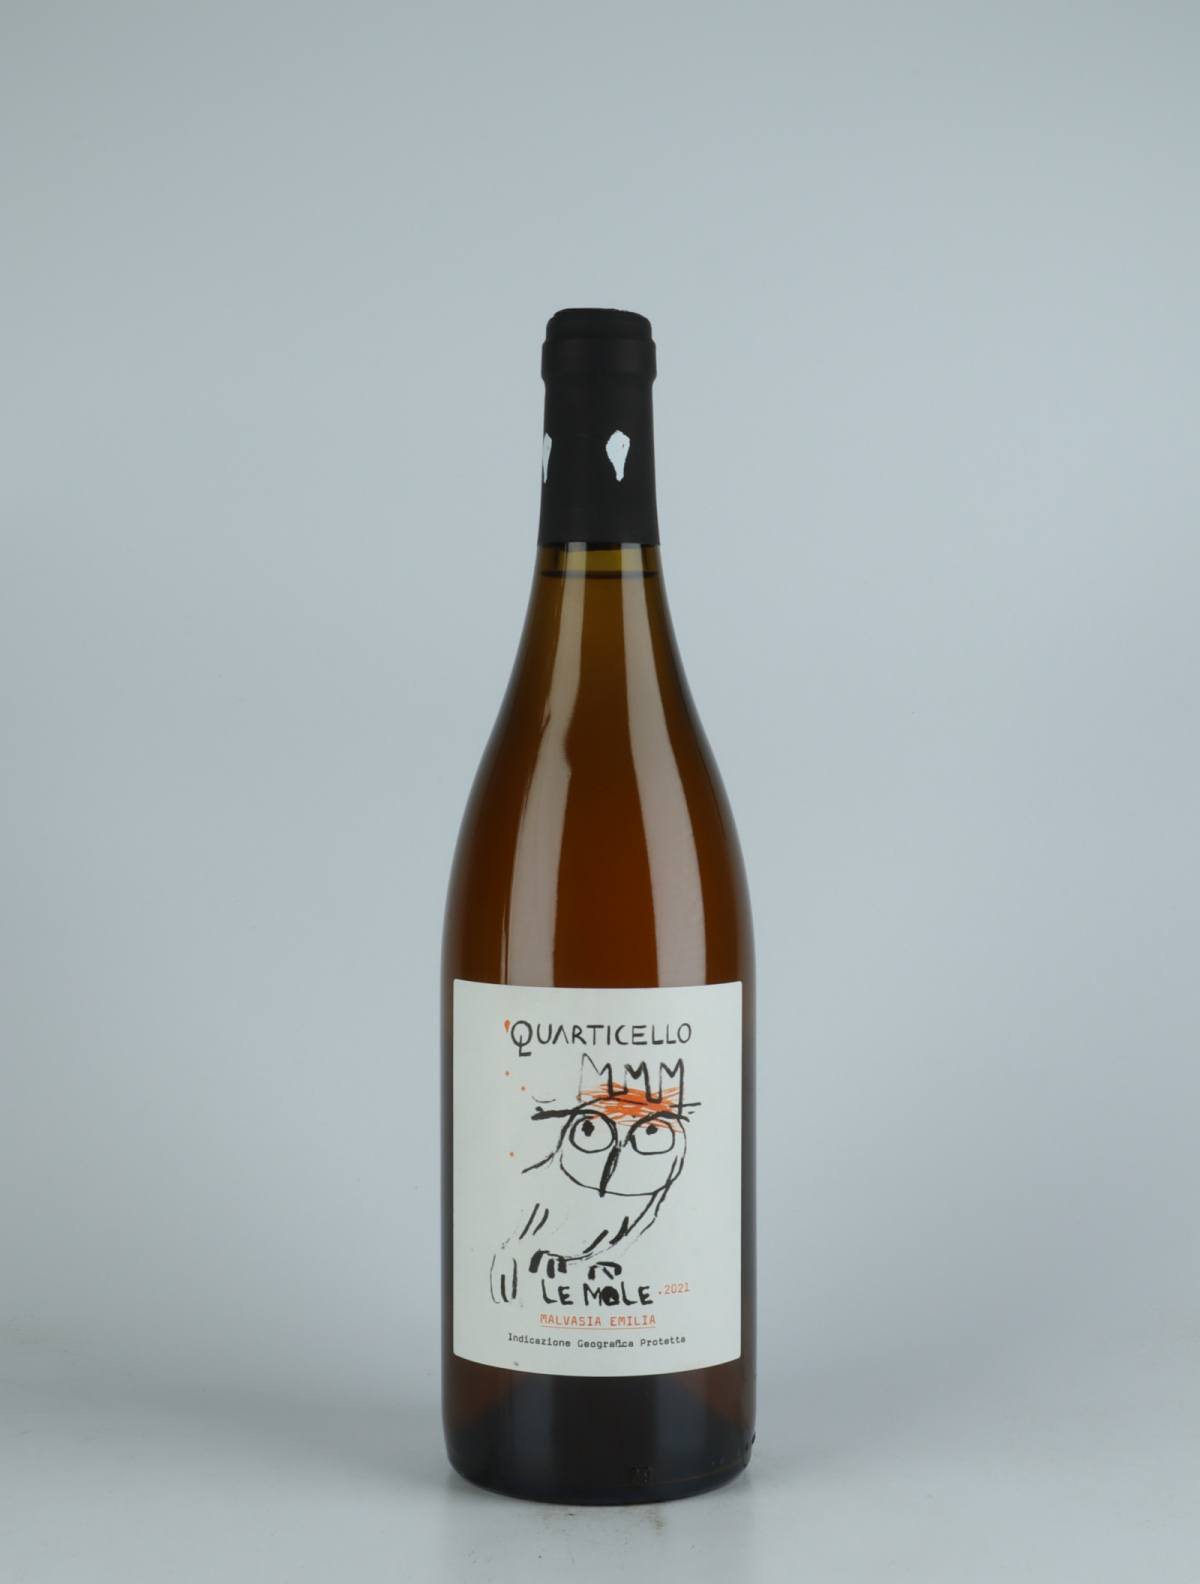 A bottle 2021 Le Mole Orange wine from Quarticello, Emilia-Romagna in Italy